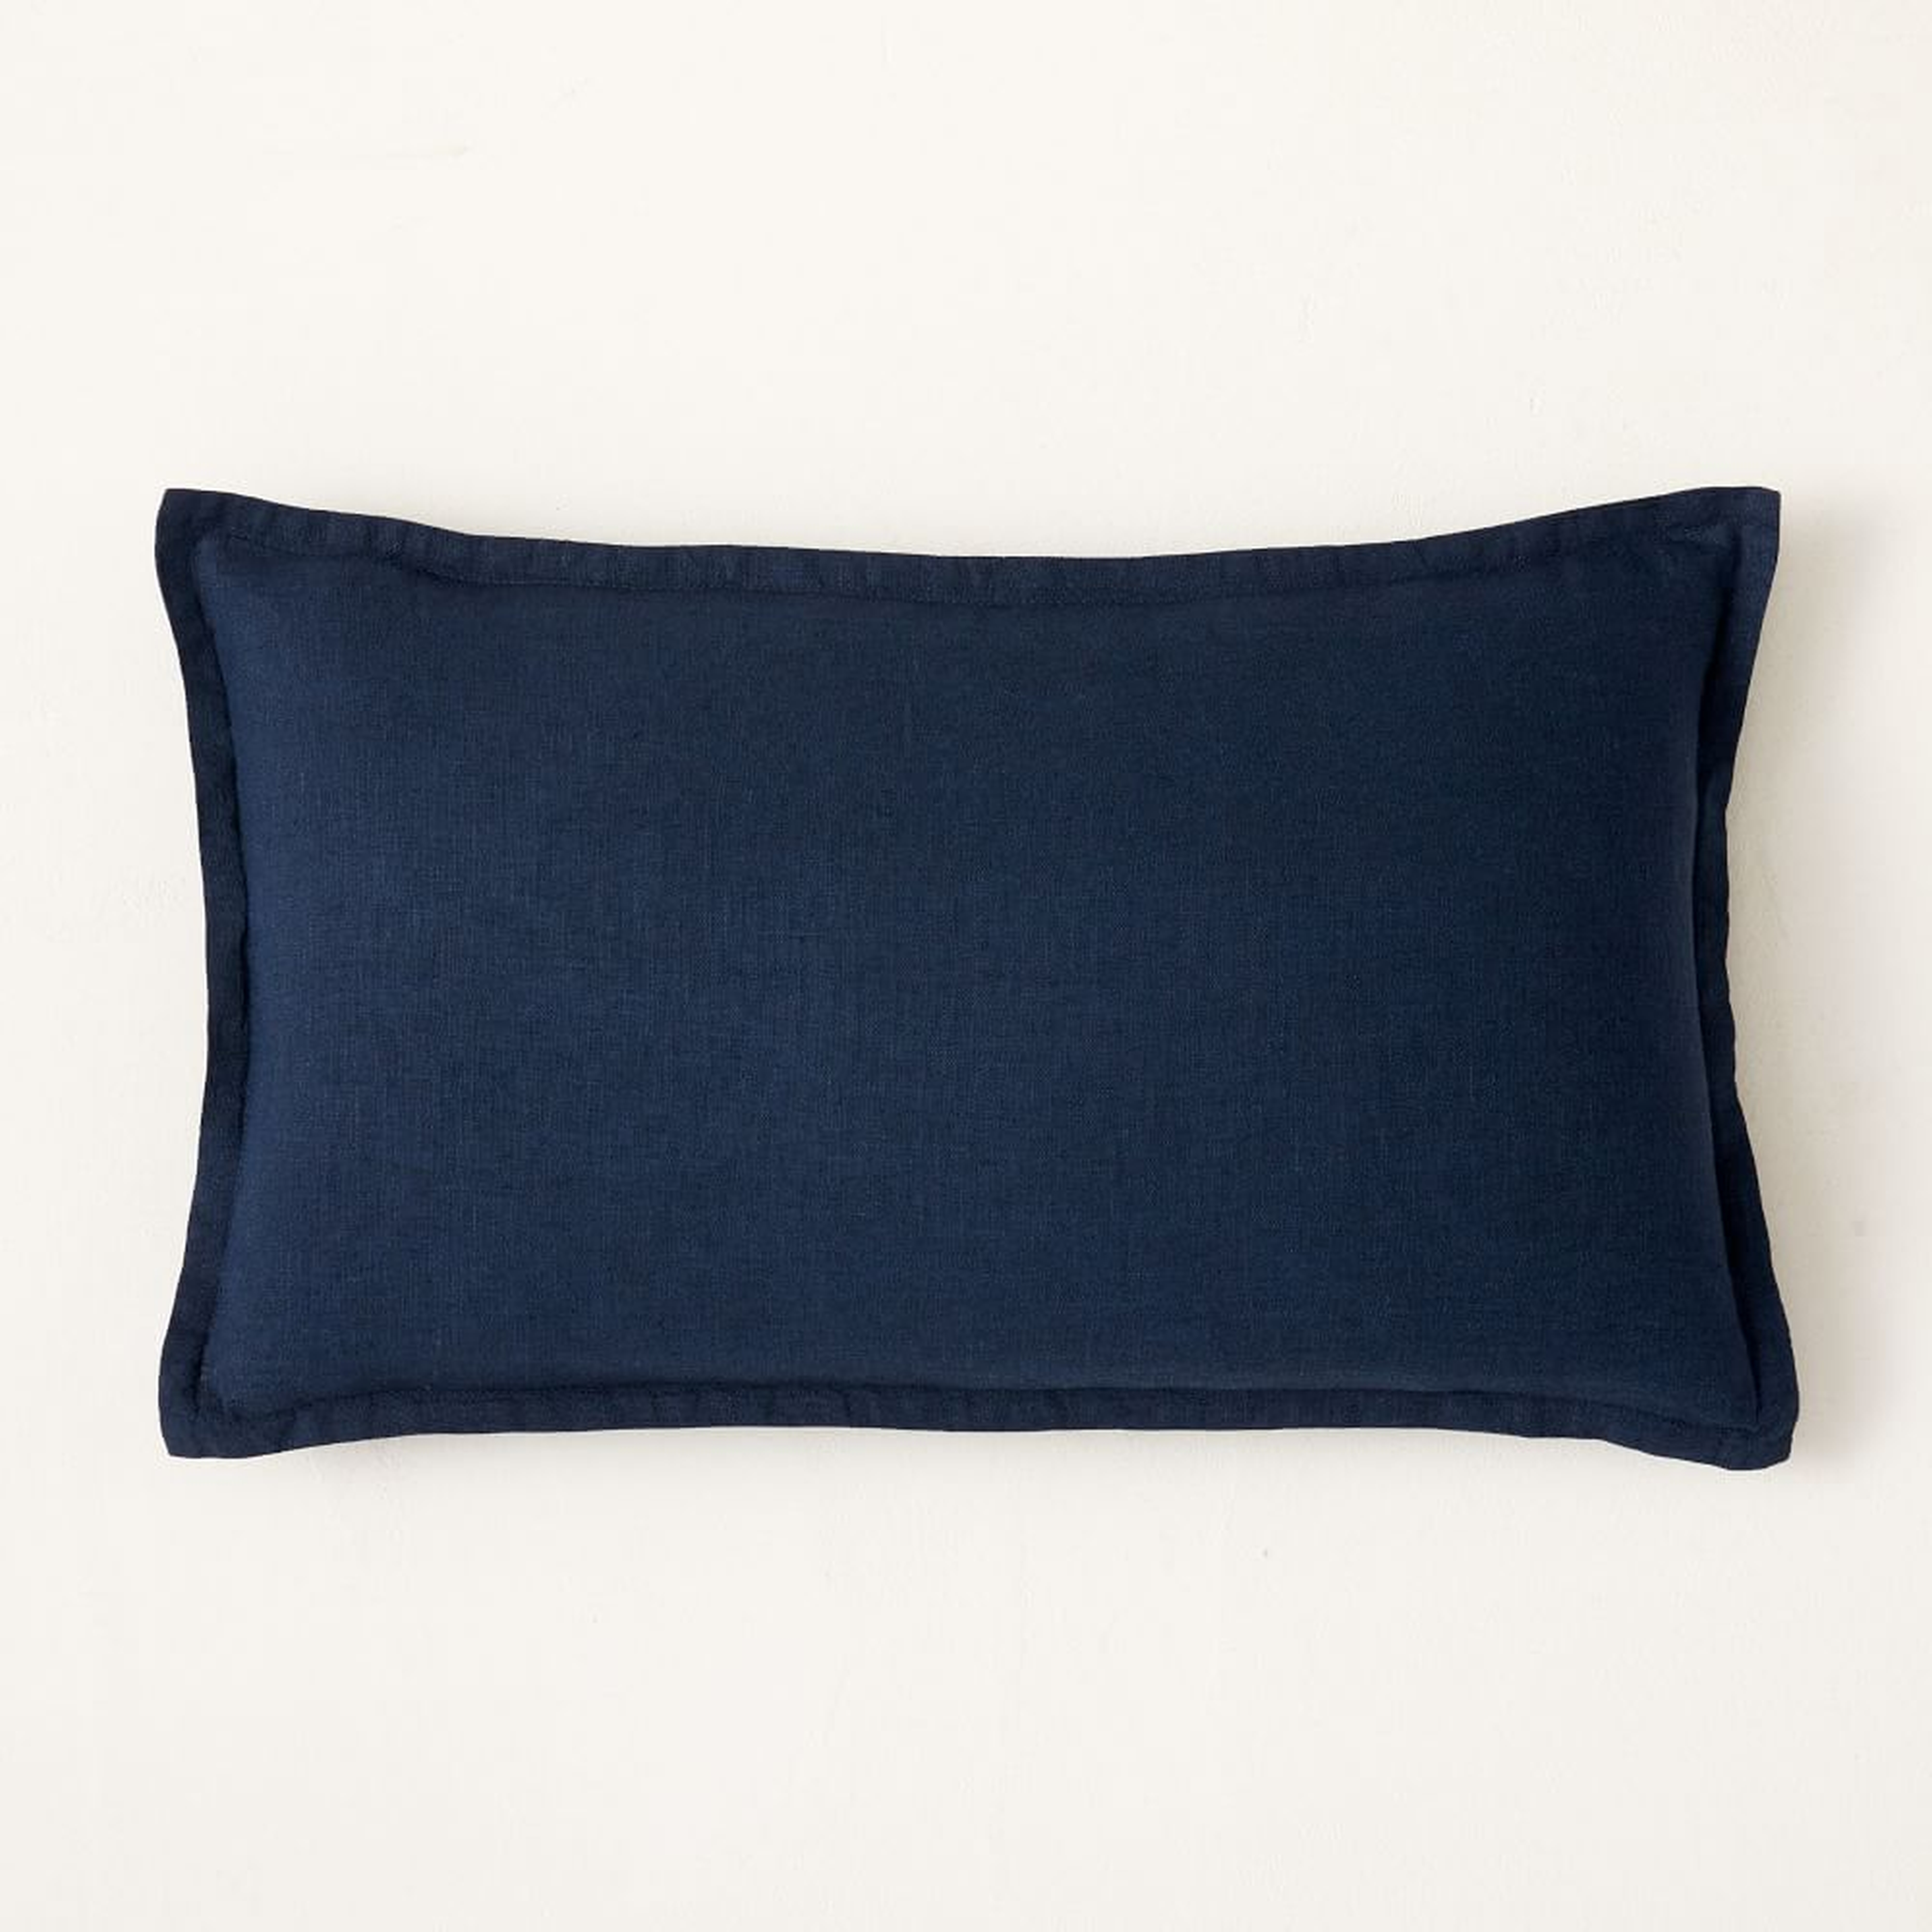 European Flax Linen Pillow Cover, 12"x21", Midnight - West Elm